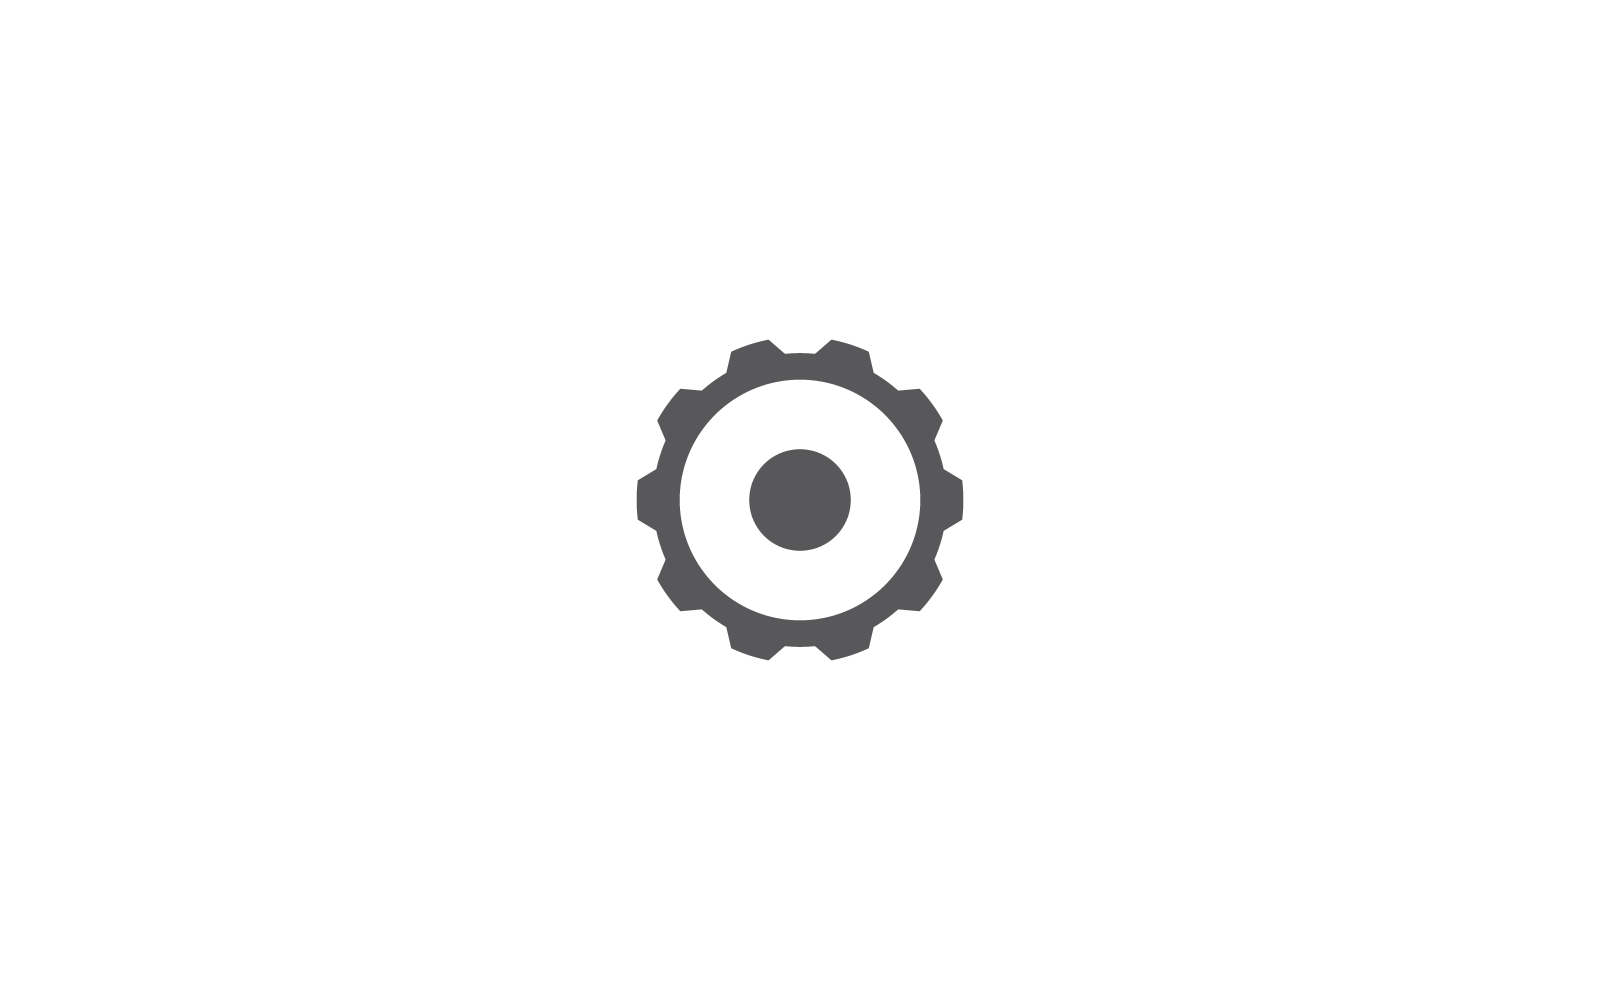 Gear logo icon vector flat design template